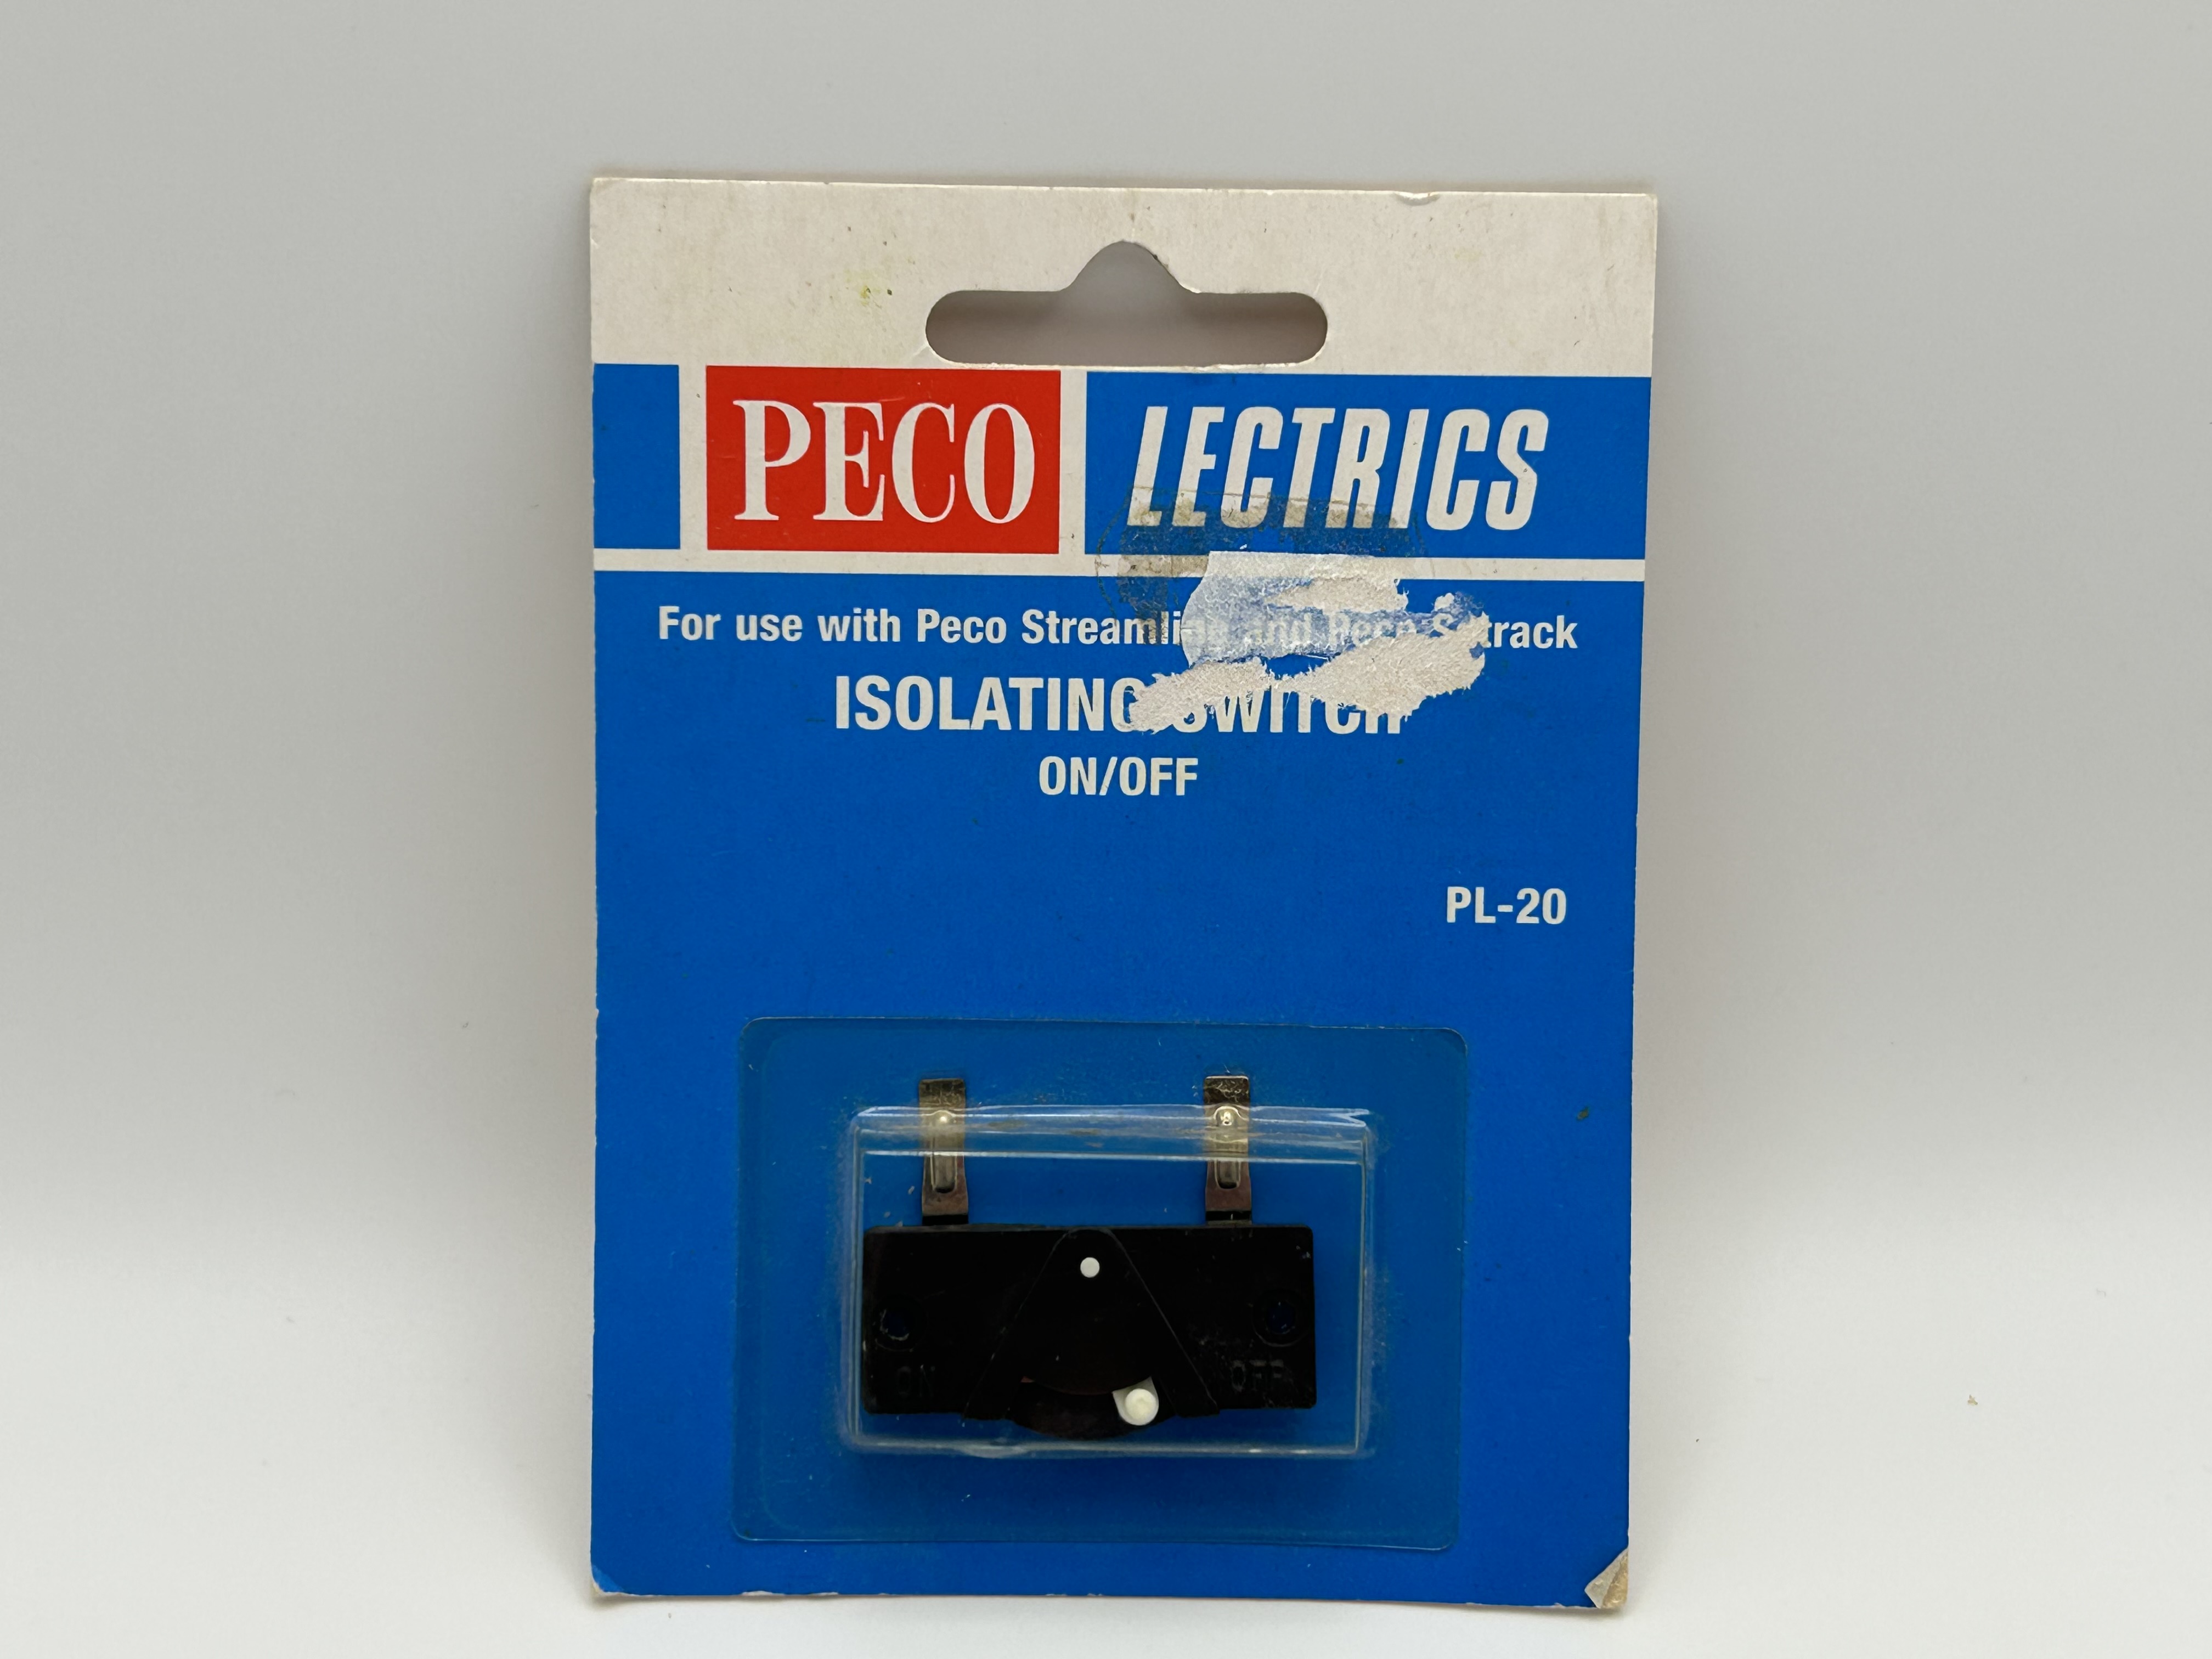 PECO Lectrics - PL-20 - Isolating Switch